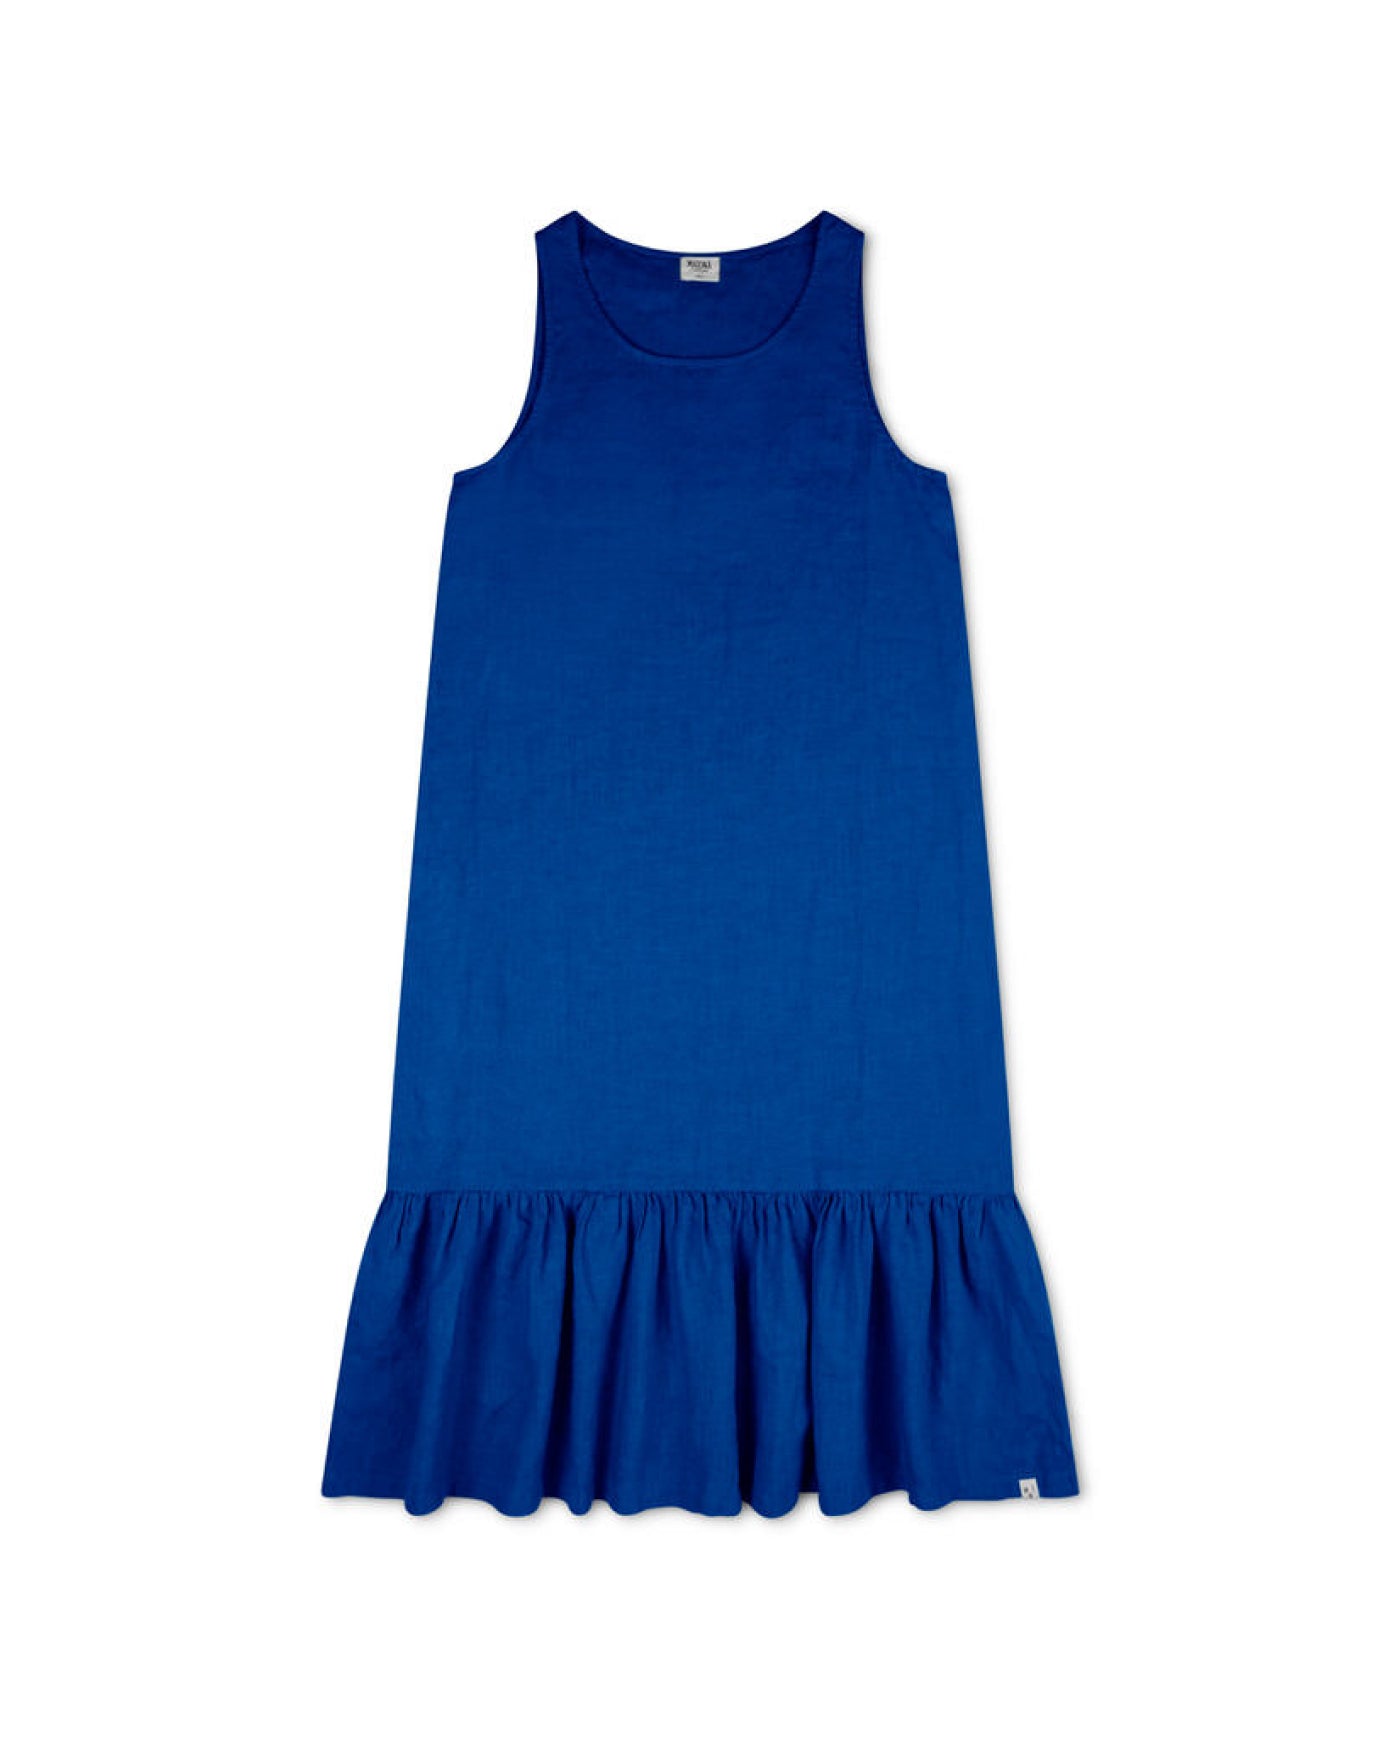 Blue summer linen dress from Matona